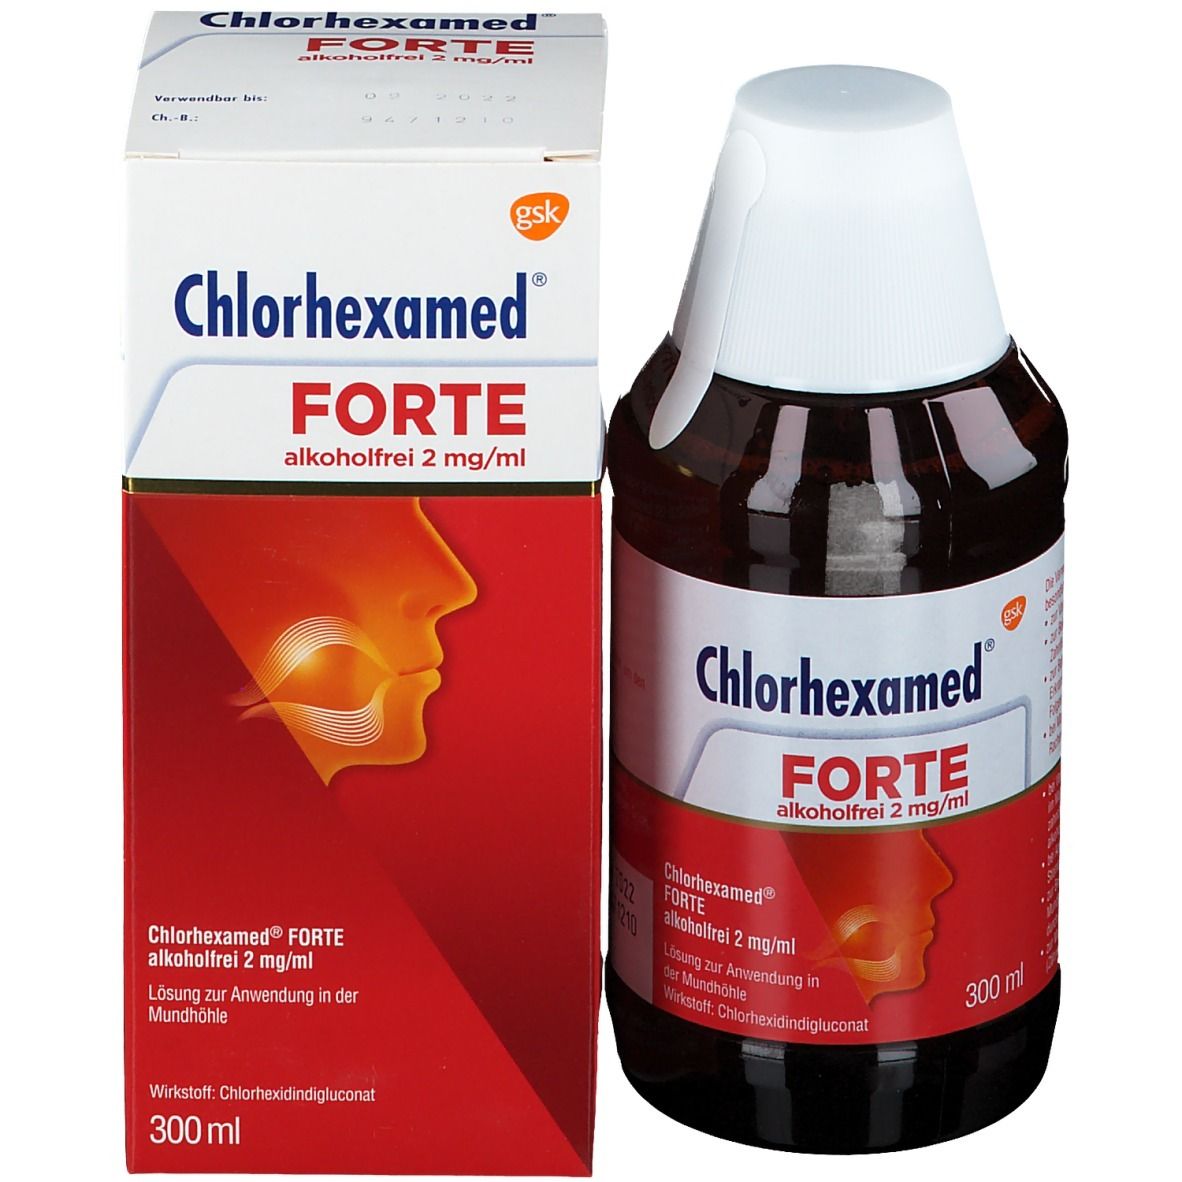 Chlorhexamed® FORTE alkoholfrei 2 mg/ml